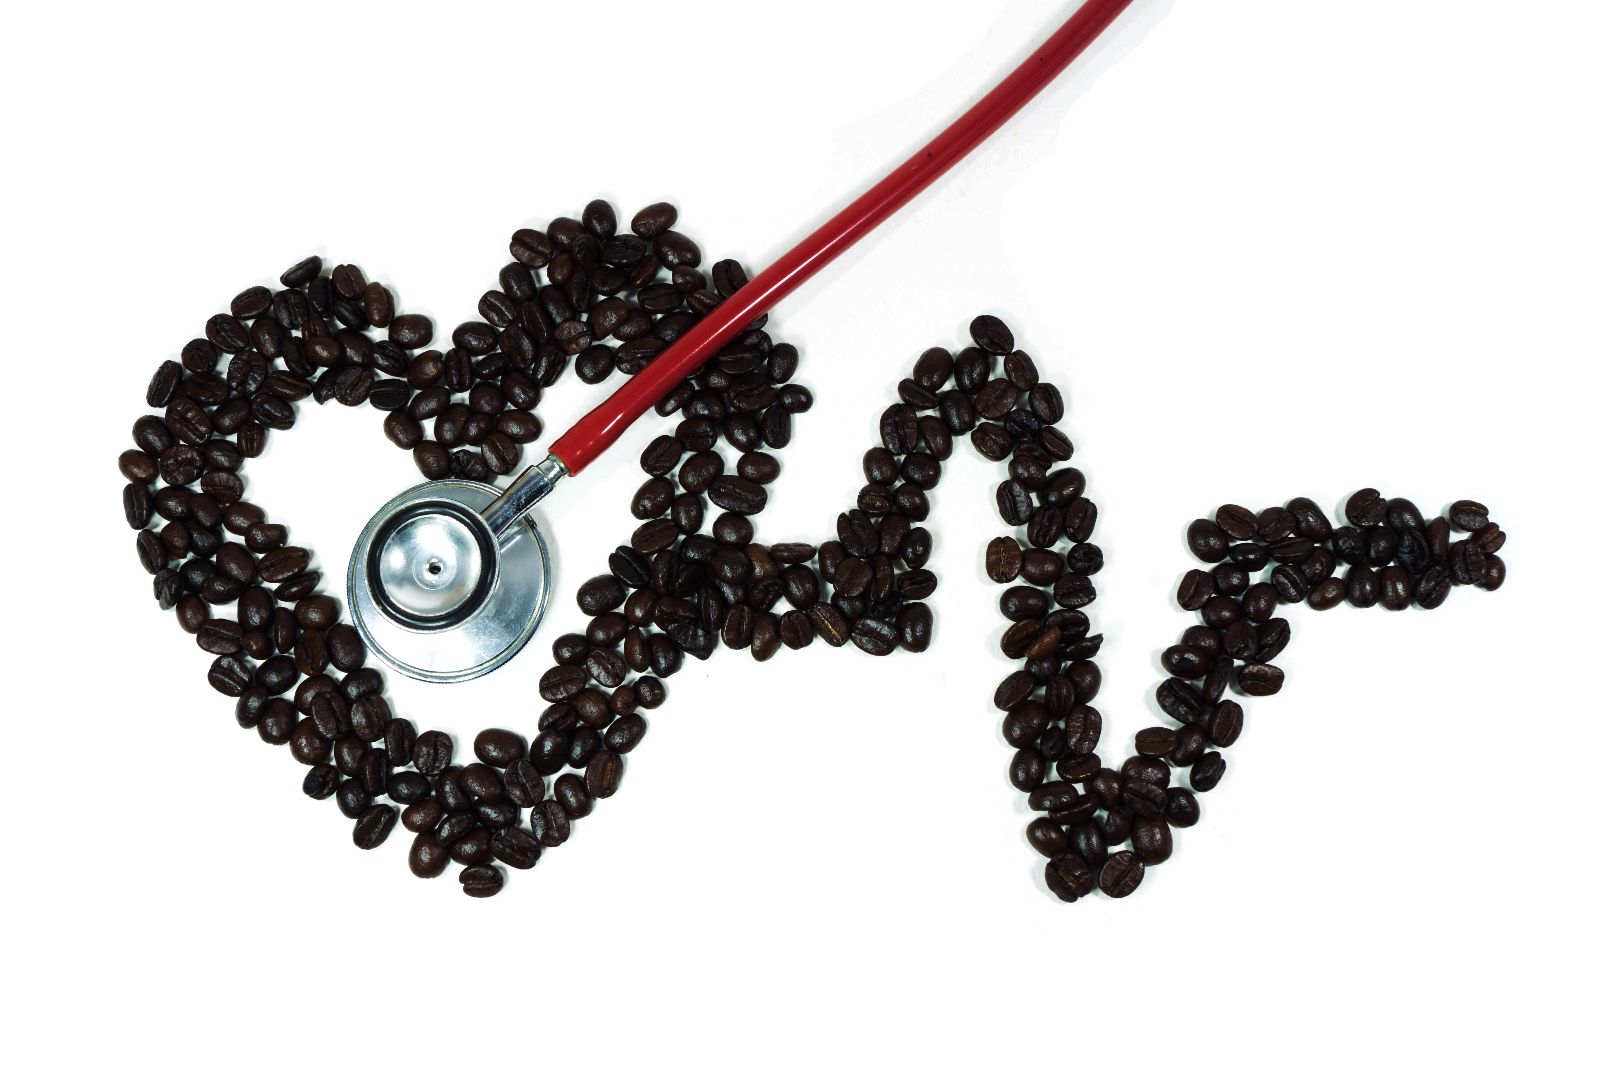  Ya sea con cafeína o descafeinado, el café se asocia con una menor mortalidad, lo que sugiere que la asociación no está vinculada a la cafeína